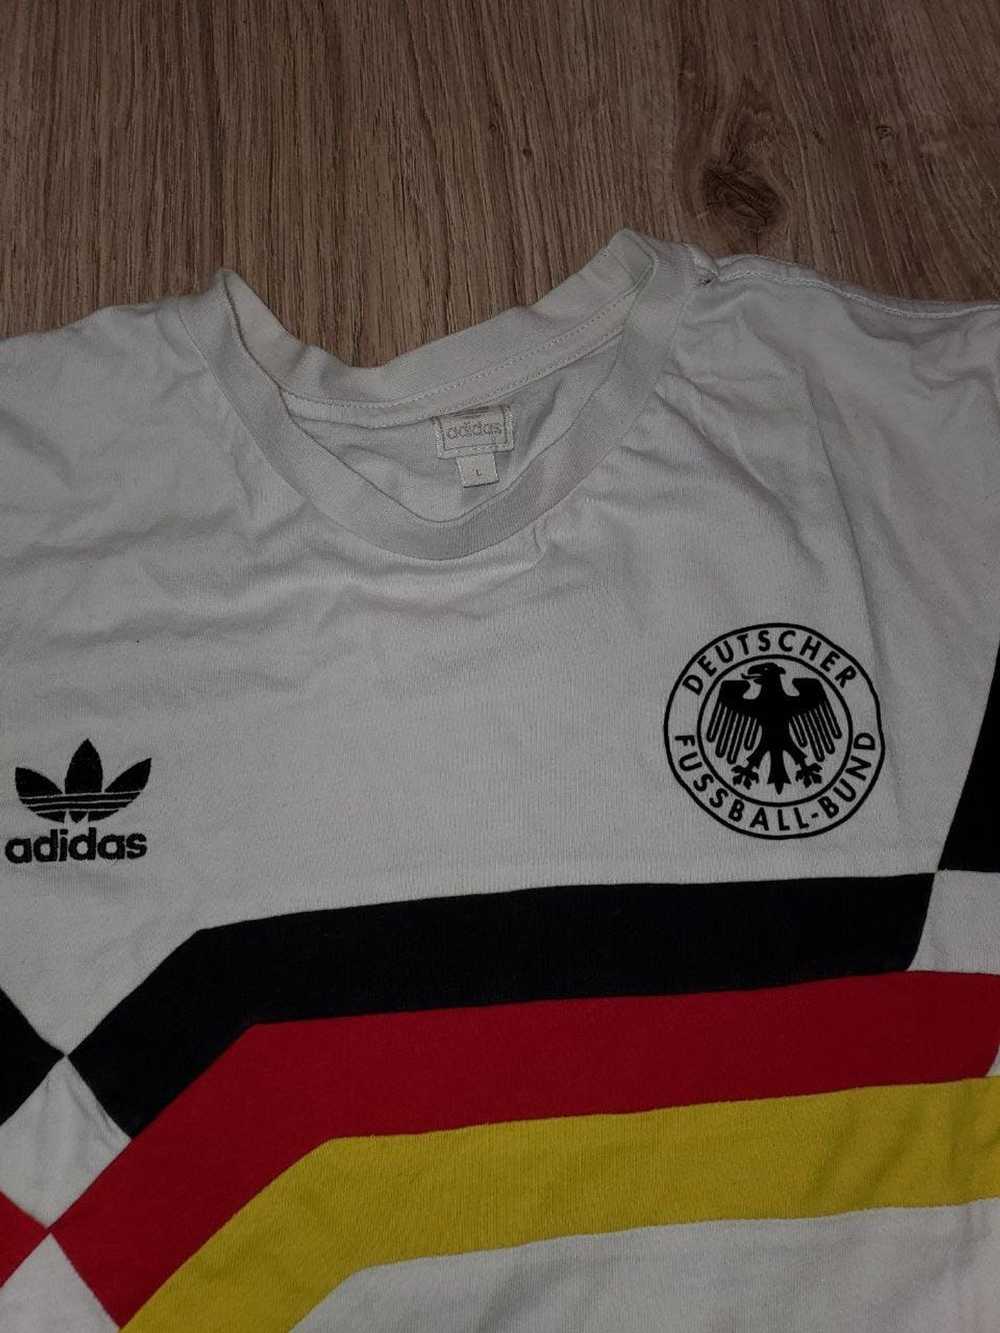 Adidas × Soccer Jersey × Vintage Vintage t-shirt … - image 3